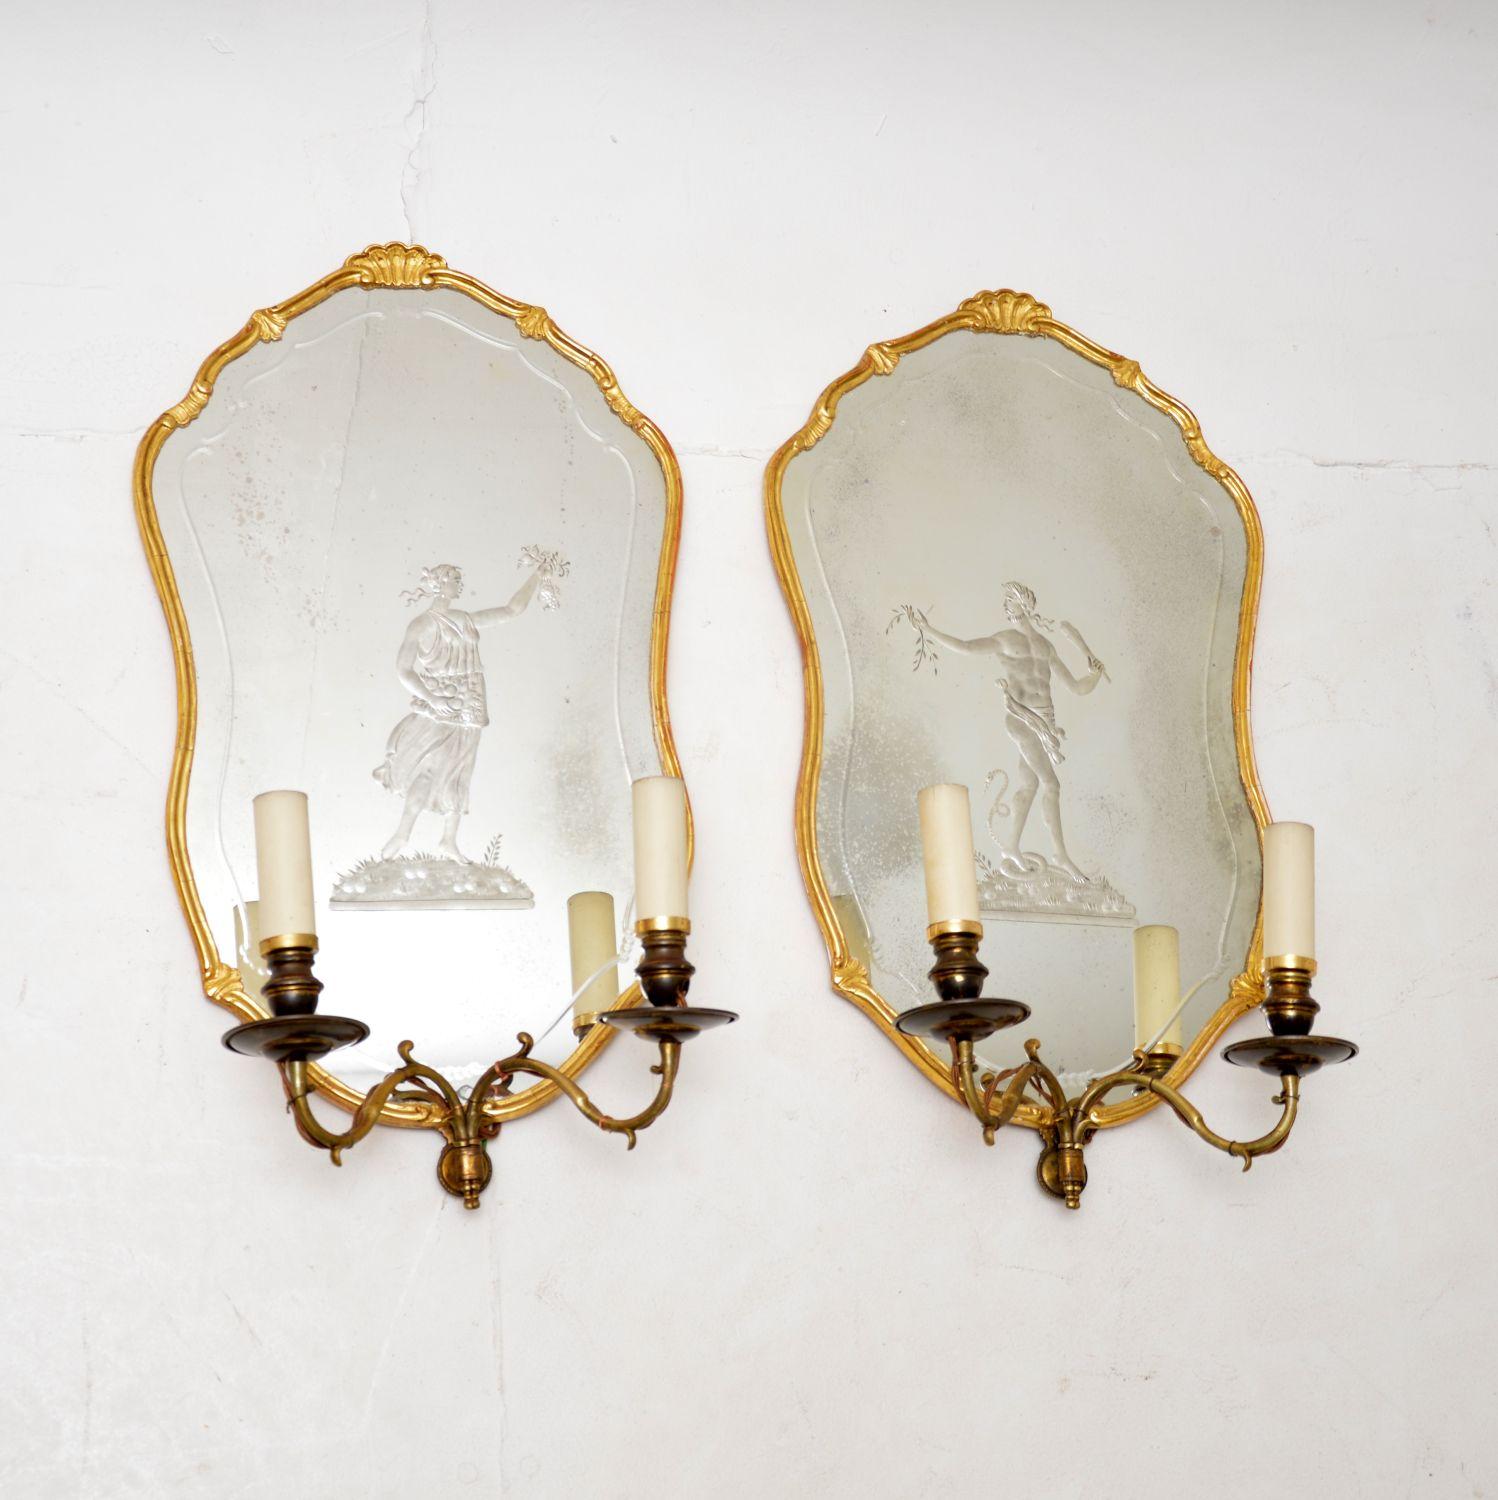 Une exquise paire de miroirs anciens en bois doré avec des appliques murales intégrées. Nous pensons qu'ils sont français et datent de la période 1880-1900.

La qualité est exceptionnelle, les cadres en bois doré ont un design magnifique et